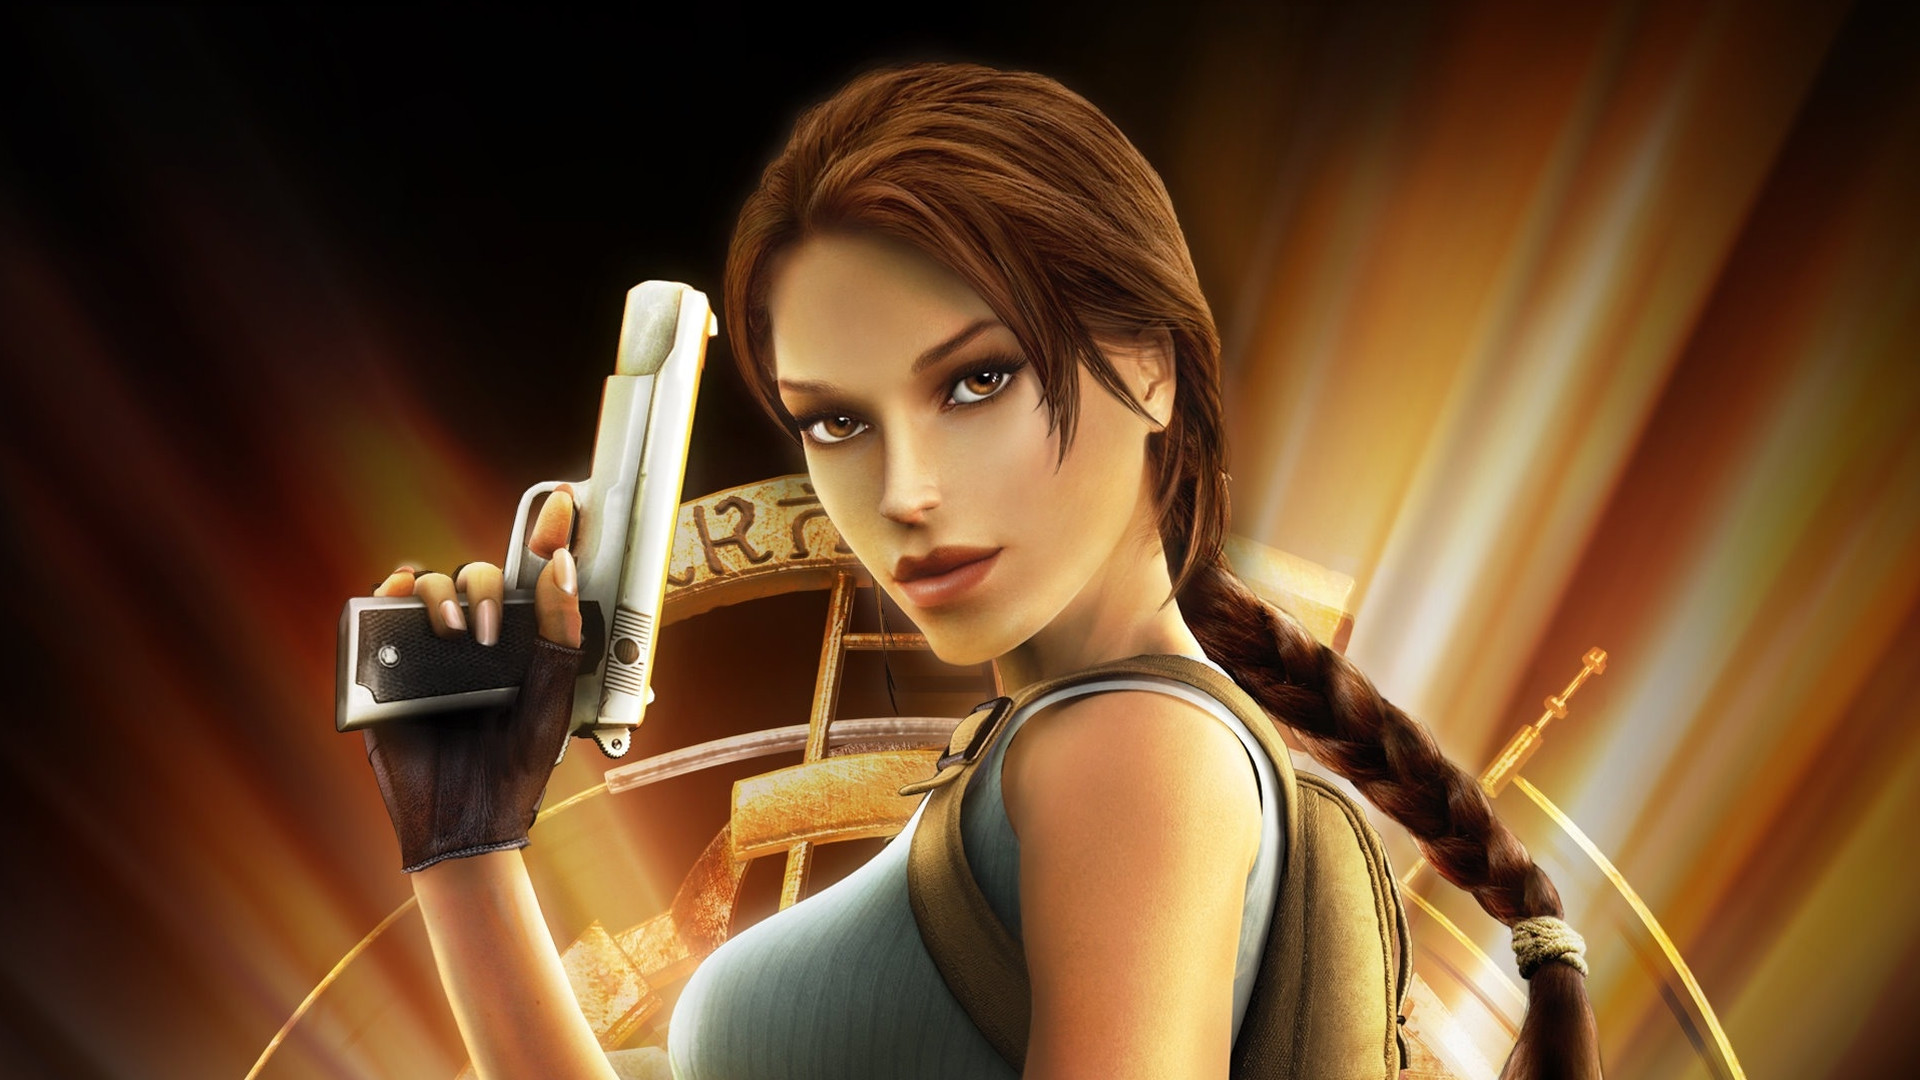 Descargar fondos de escritorio de Tomb Raider: Anniversary HD